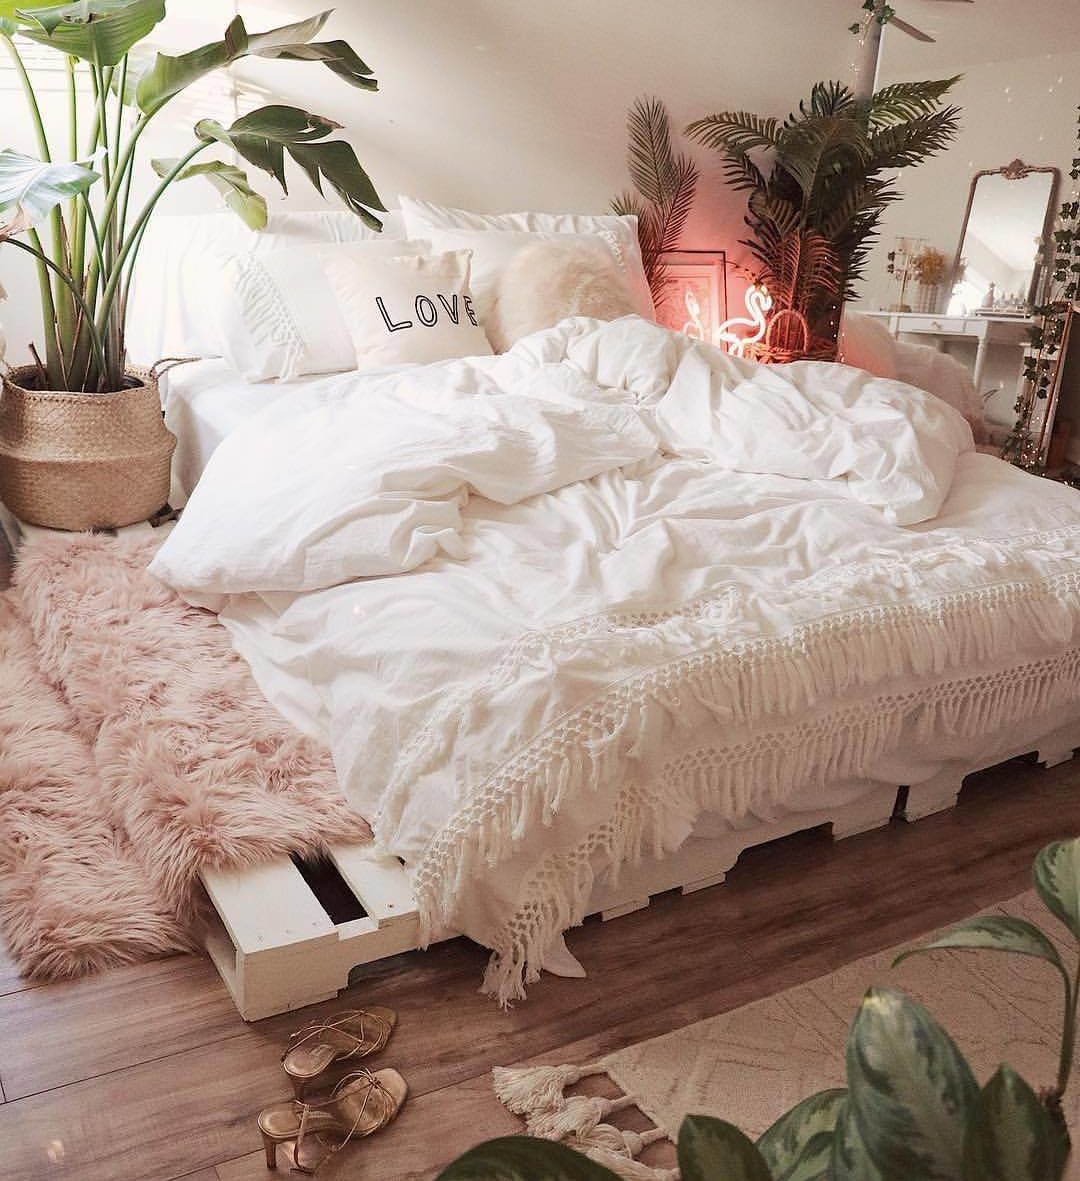 Phòng ngủ cực kỳ sang trọng này có giường pallet quét vôi trắng bên dưới chăn, thảm và tông màu hồng có họa tiết thơ mộng